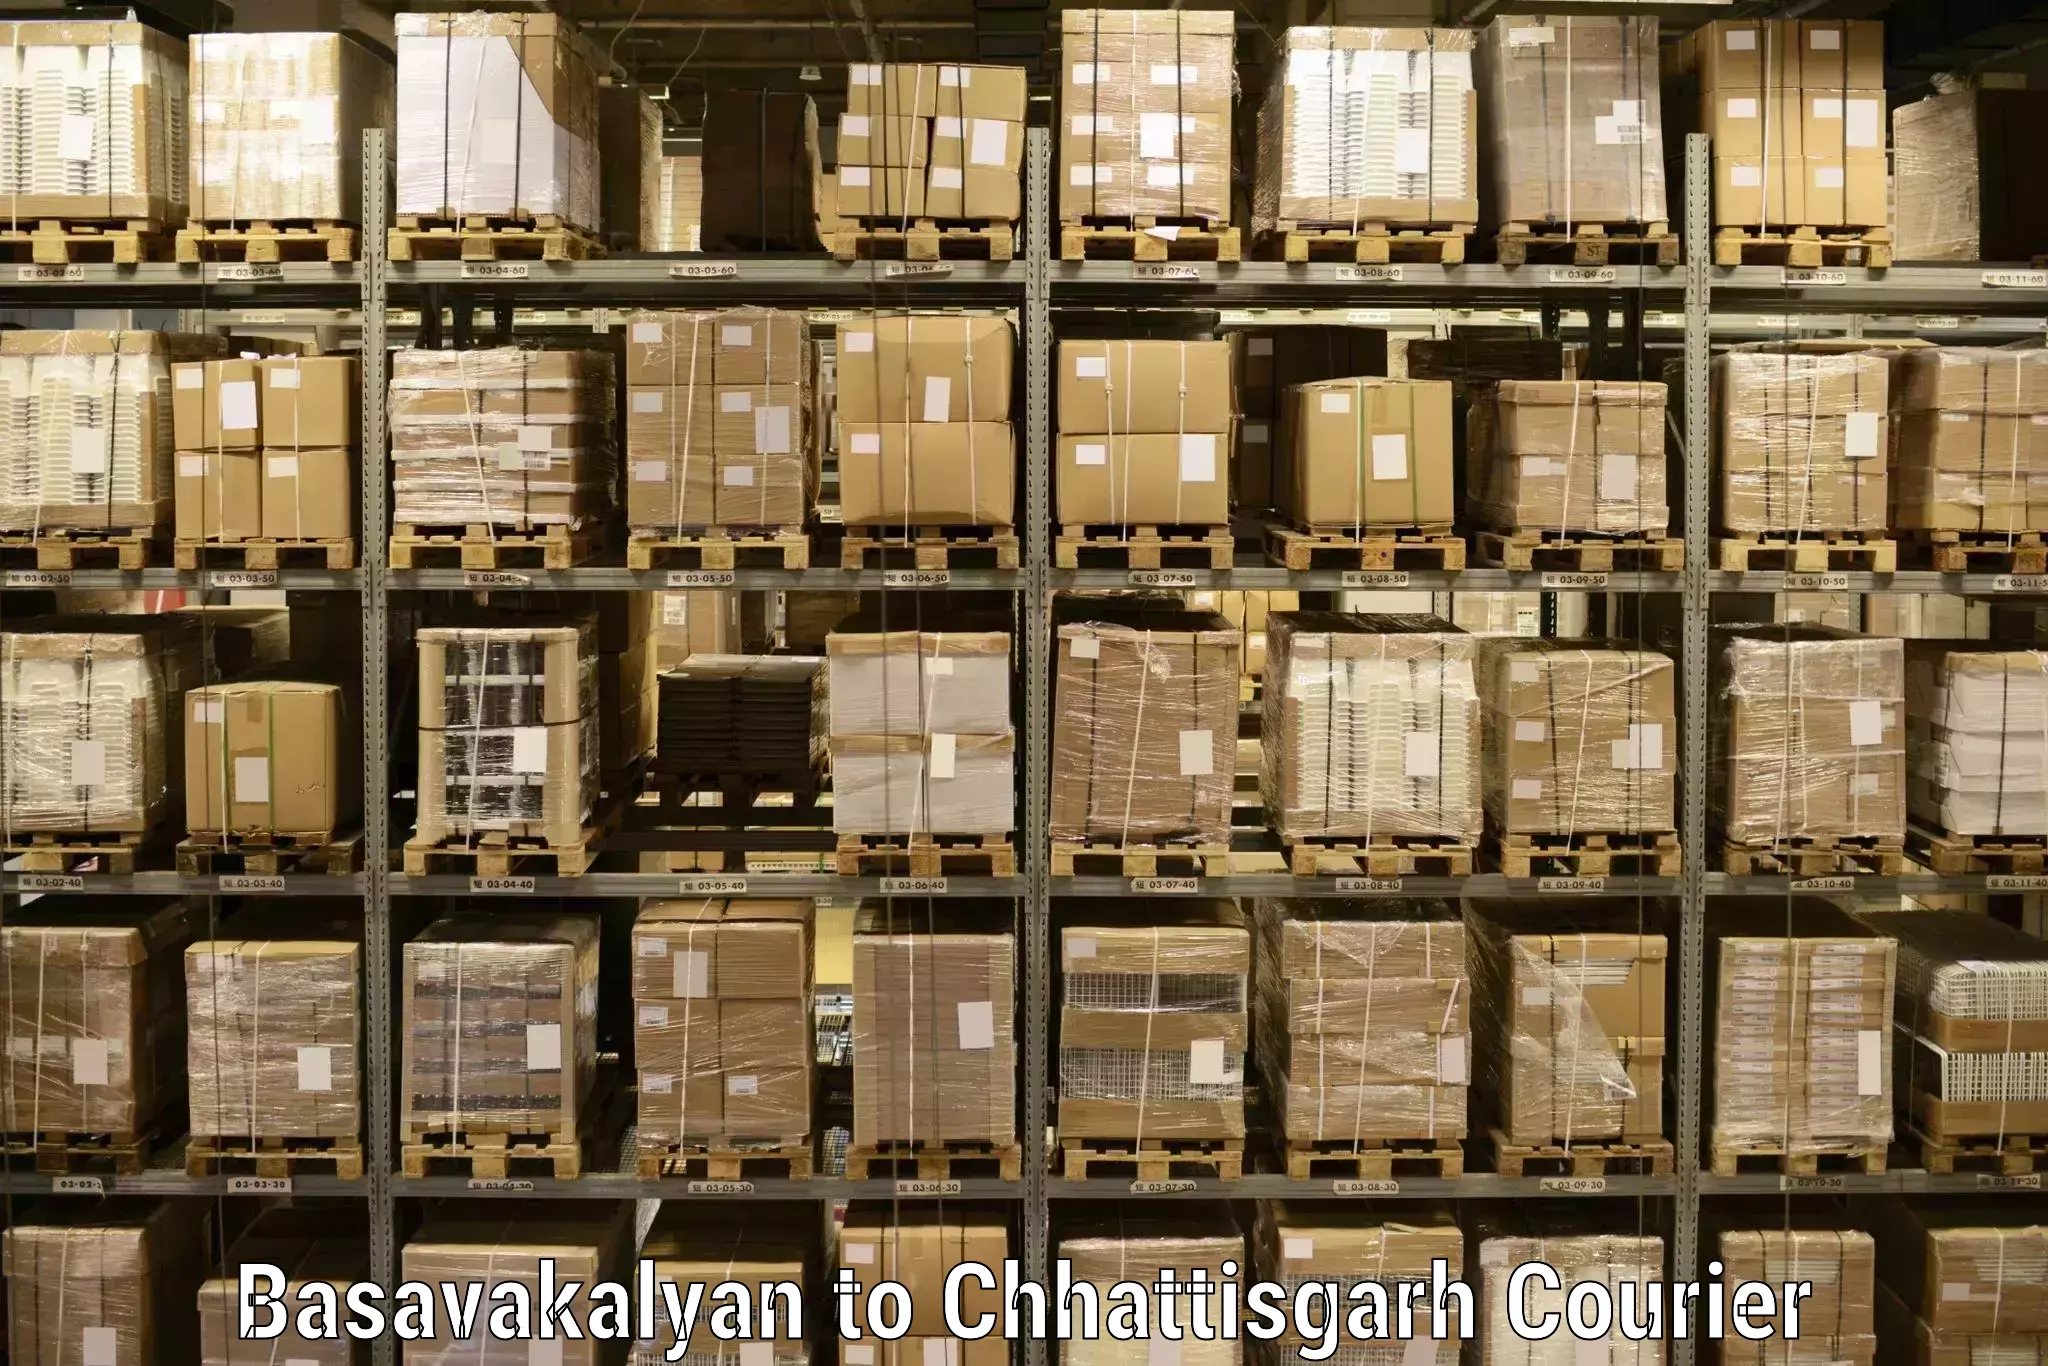 Nationwide parcel services Basavakalyan to Rajnandgaon